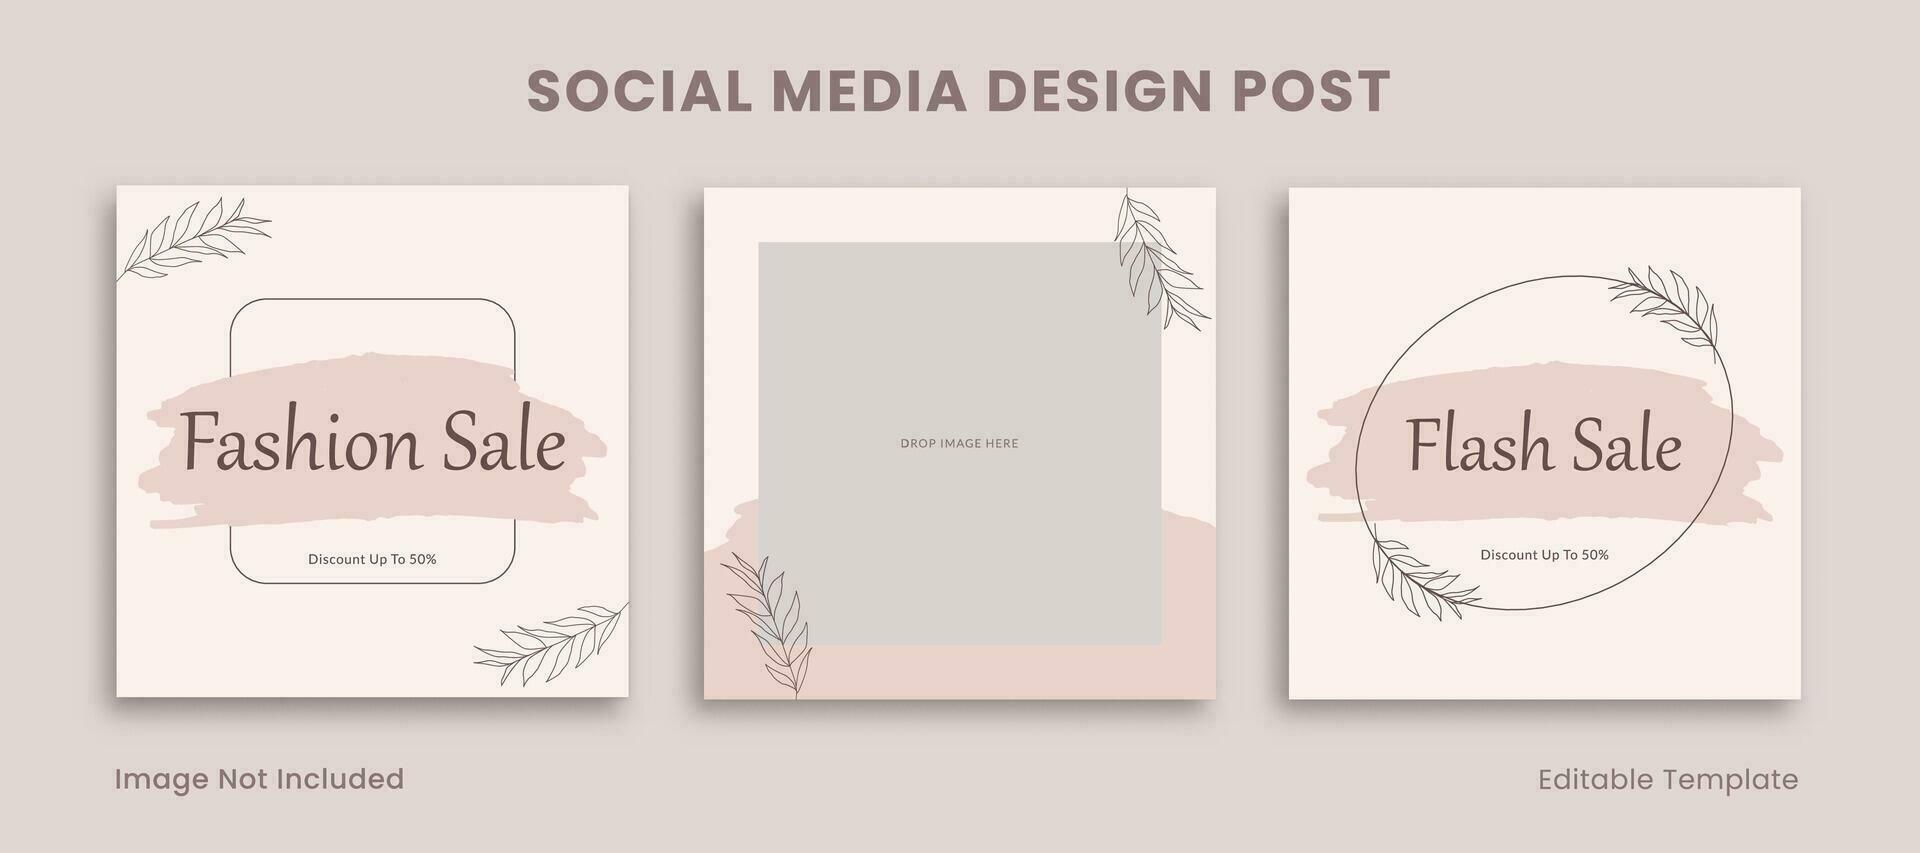 einstellen von editierbar Sozial Medien Design Post Vorlage dekoriert mit Rosa botanisch rahmen. geeignet zum Werbung, Förderung, branding Produkt Schönheit, Mode, Kosmetik, feminin vektor